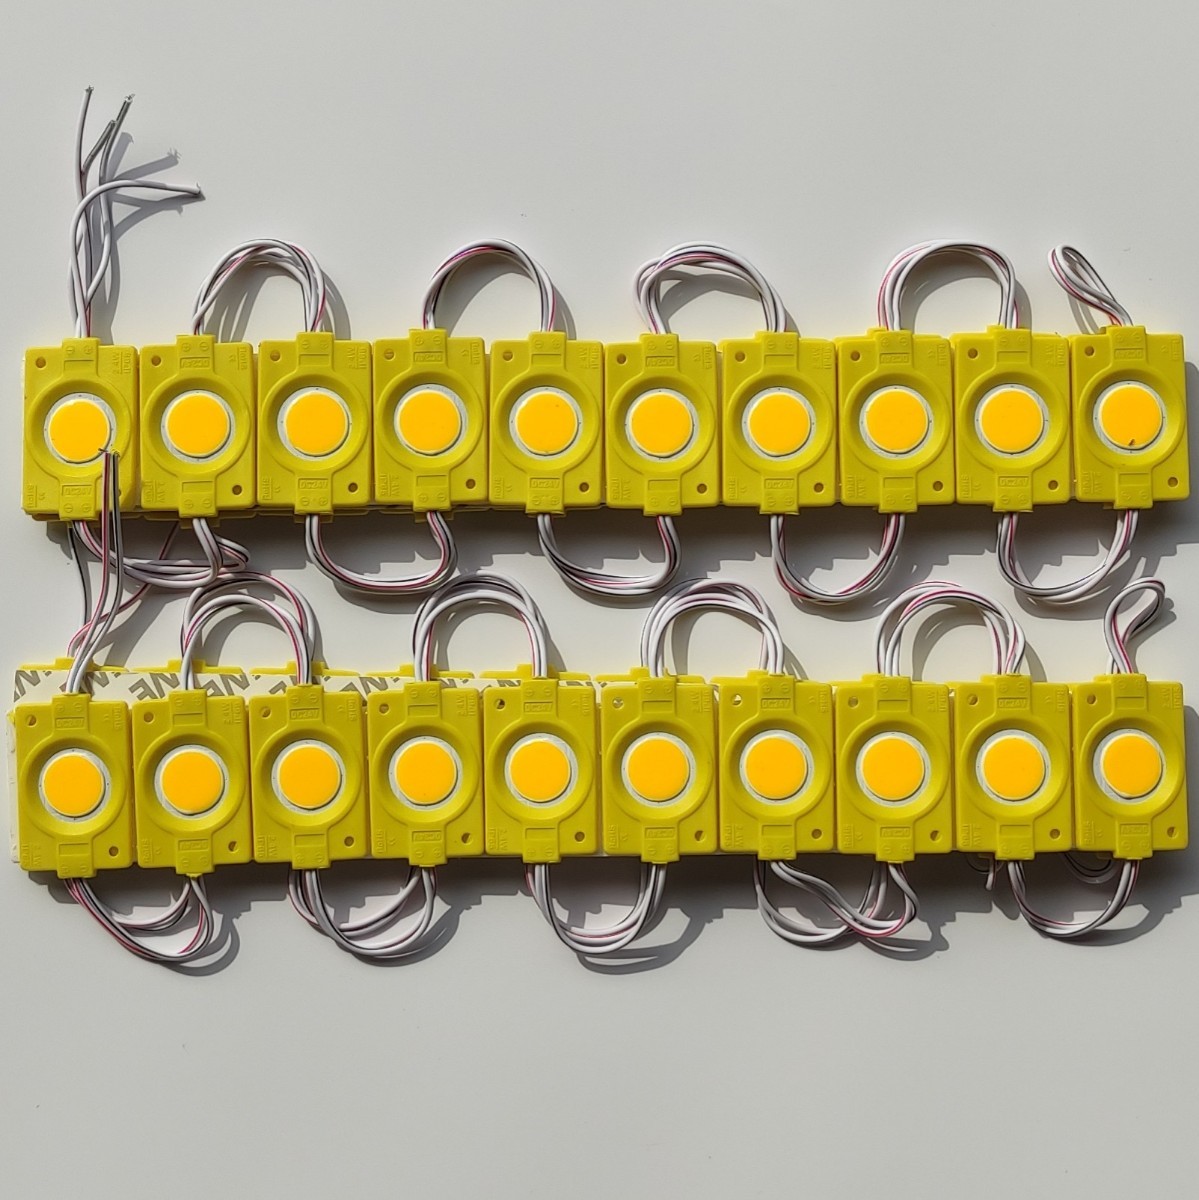 シャーシマーカー ラウンド 20コマ × 2セット 40個 LED 黄色 24V